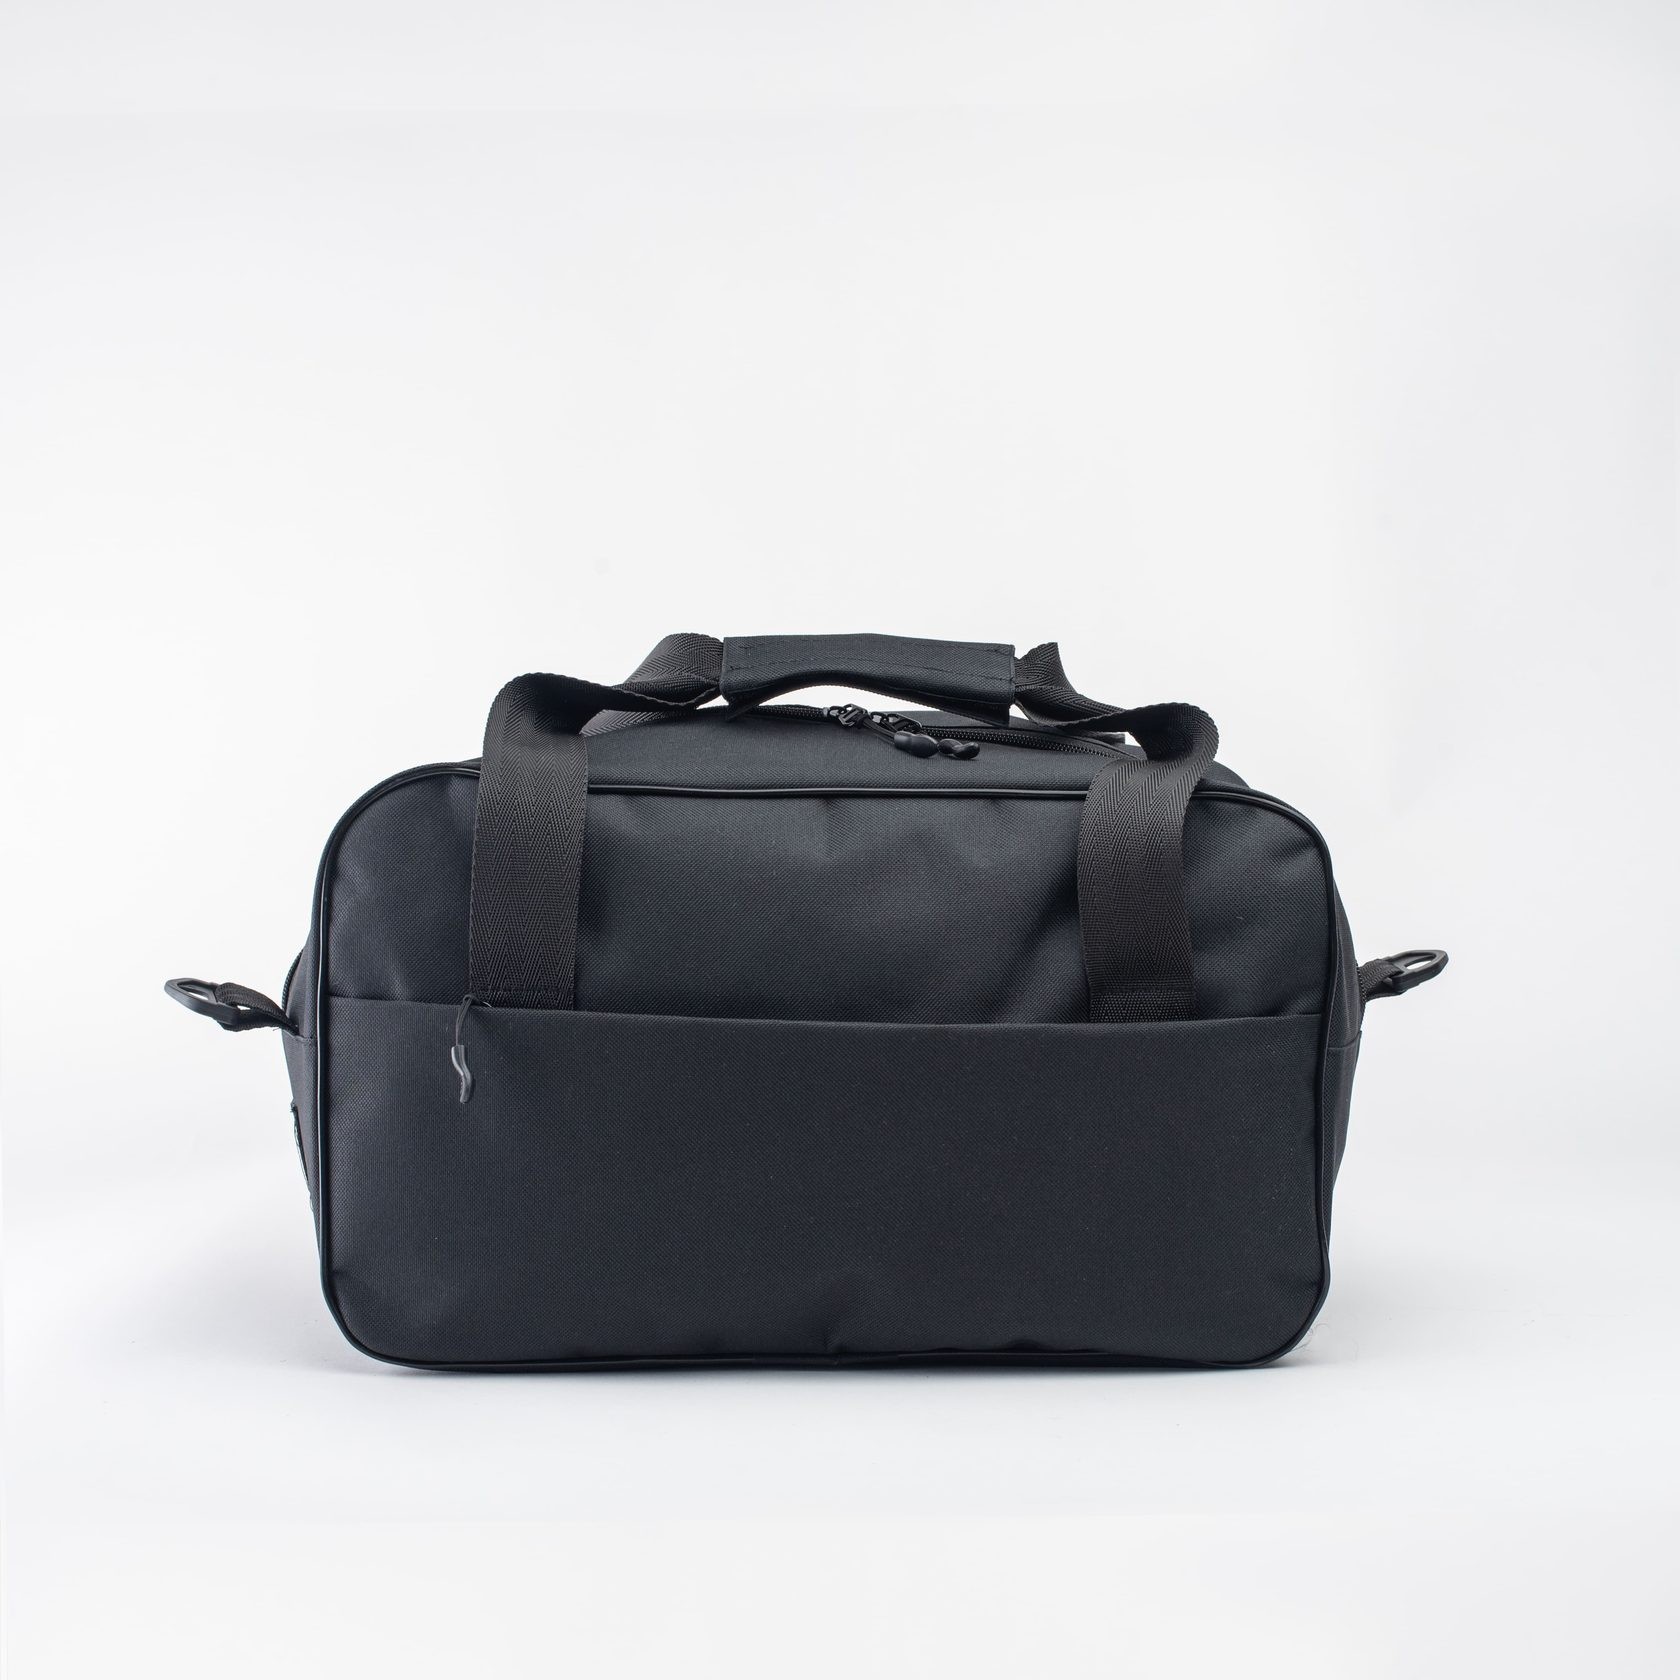 TRVLbag black | hand luggage | bag 40x20x25 cm